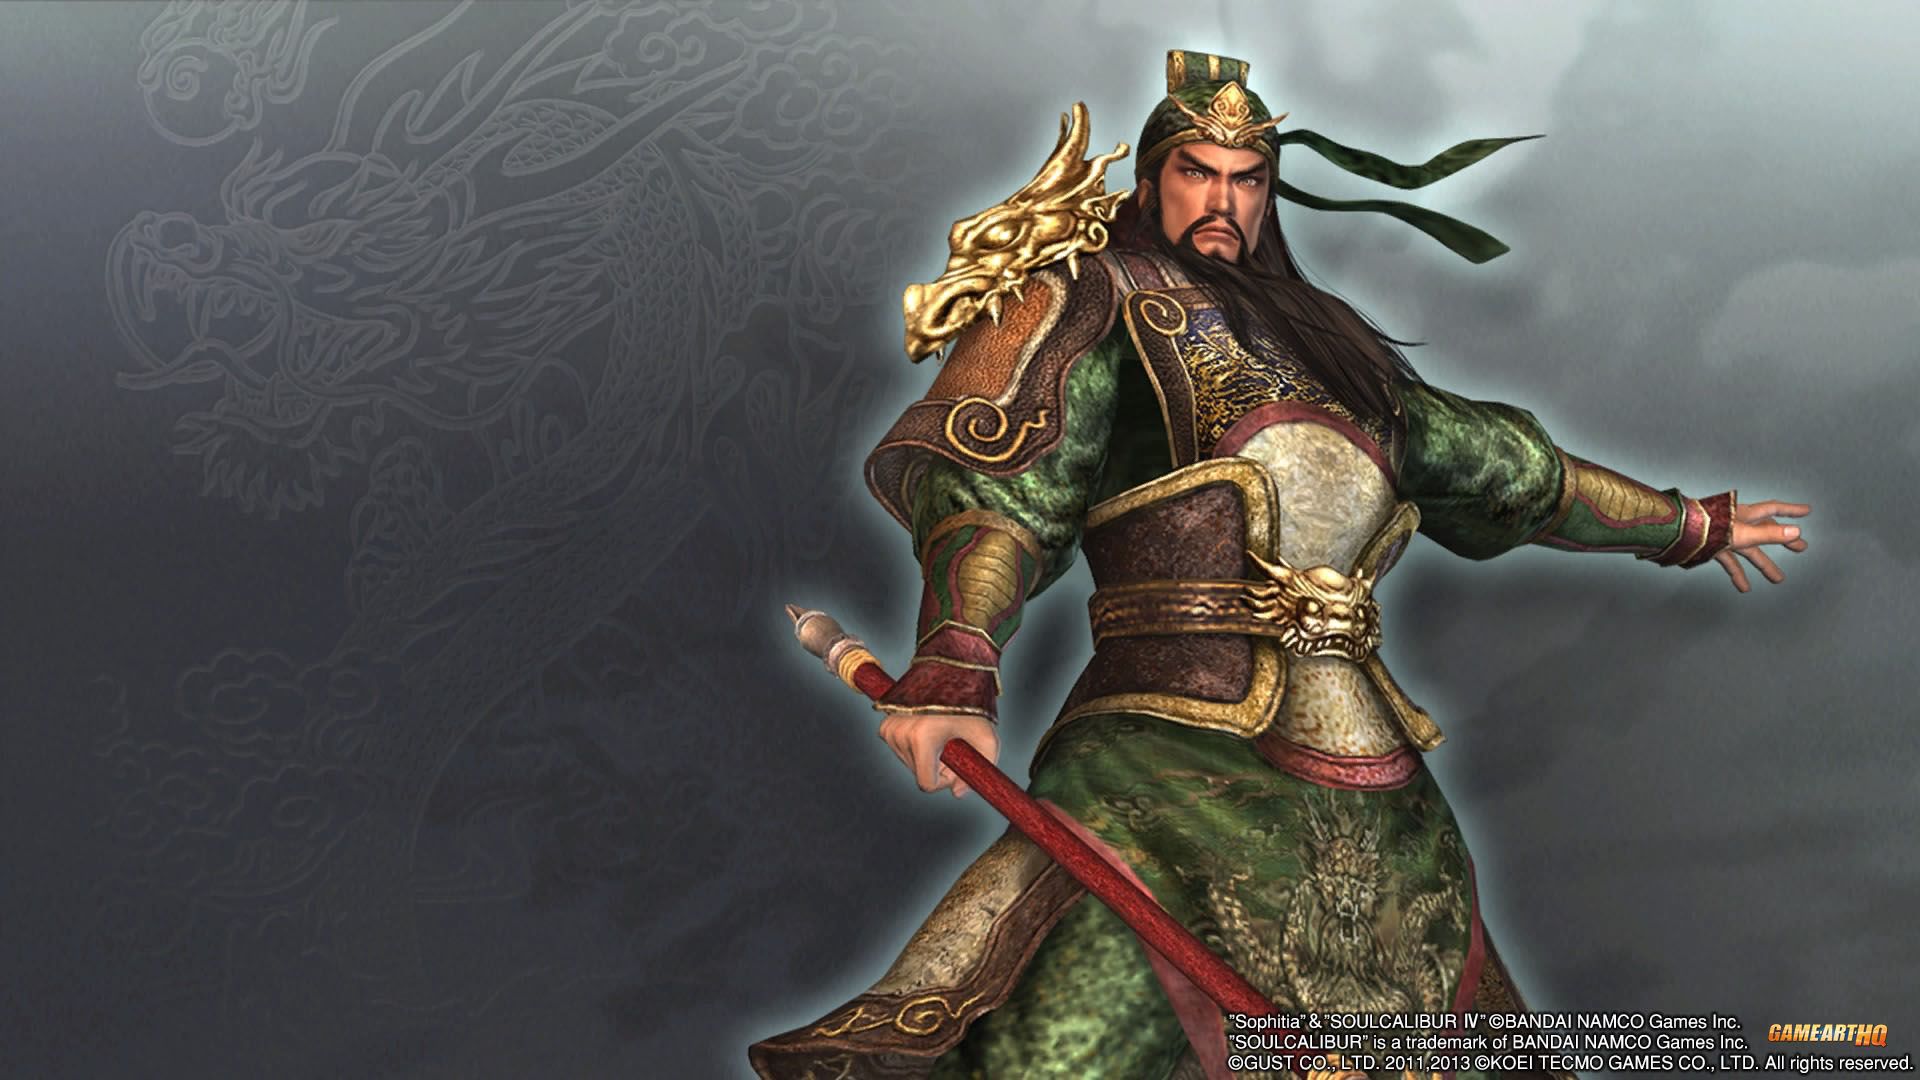 kwan kong wallpaper,cg artwork,mythology,warlord,fictional character,games